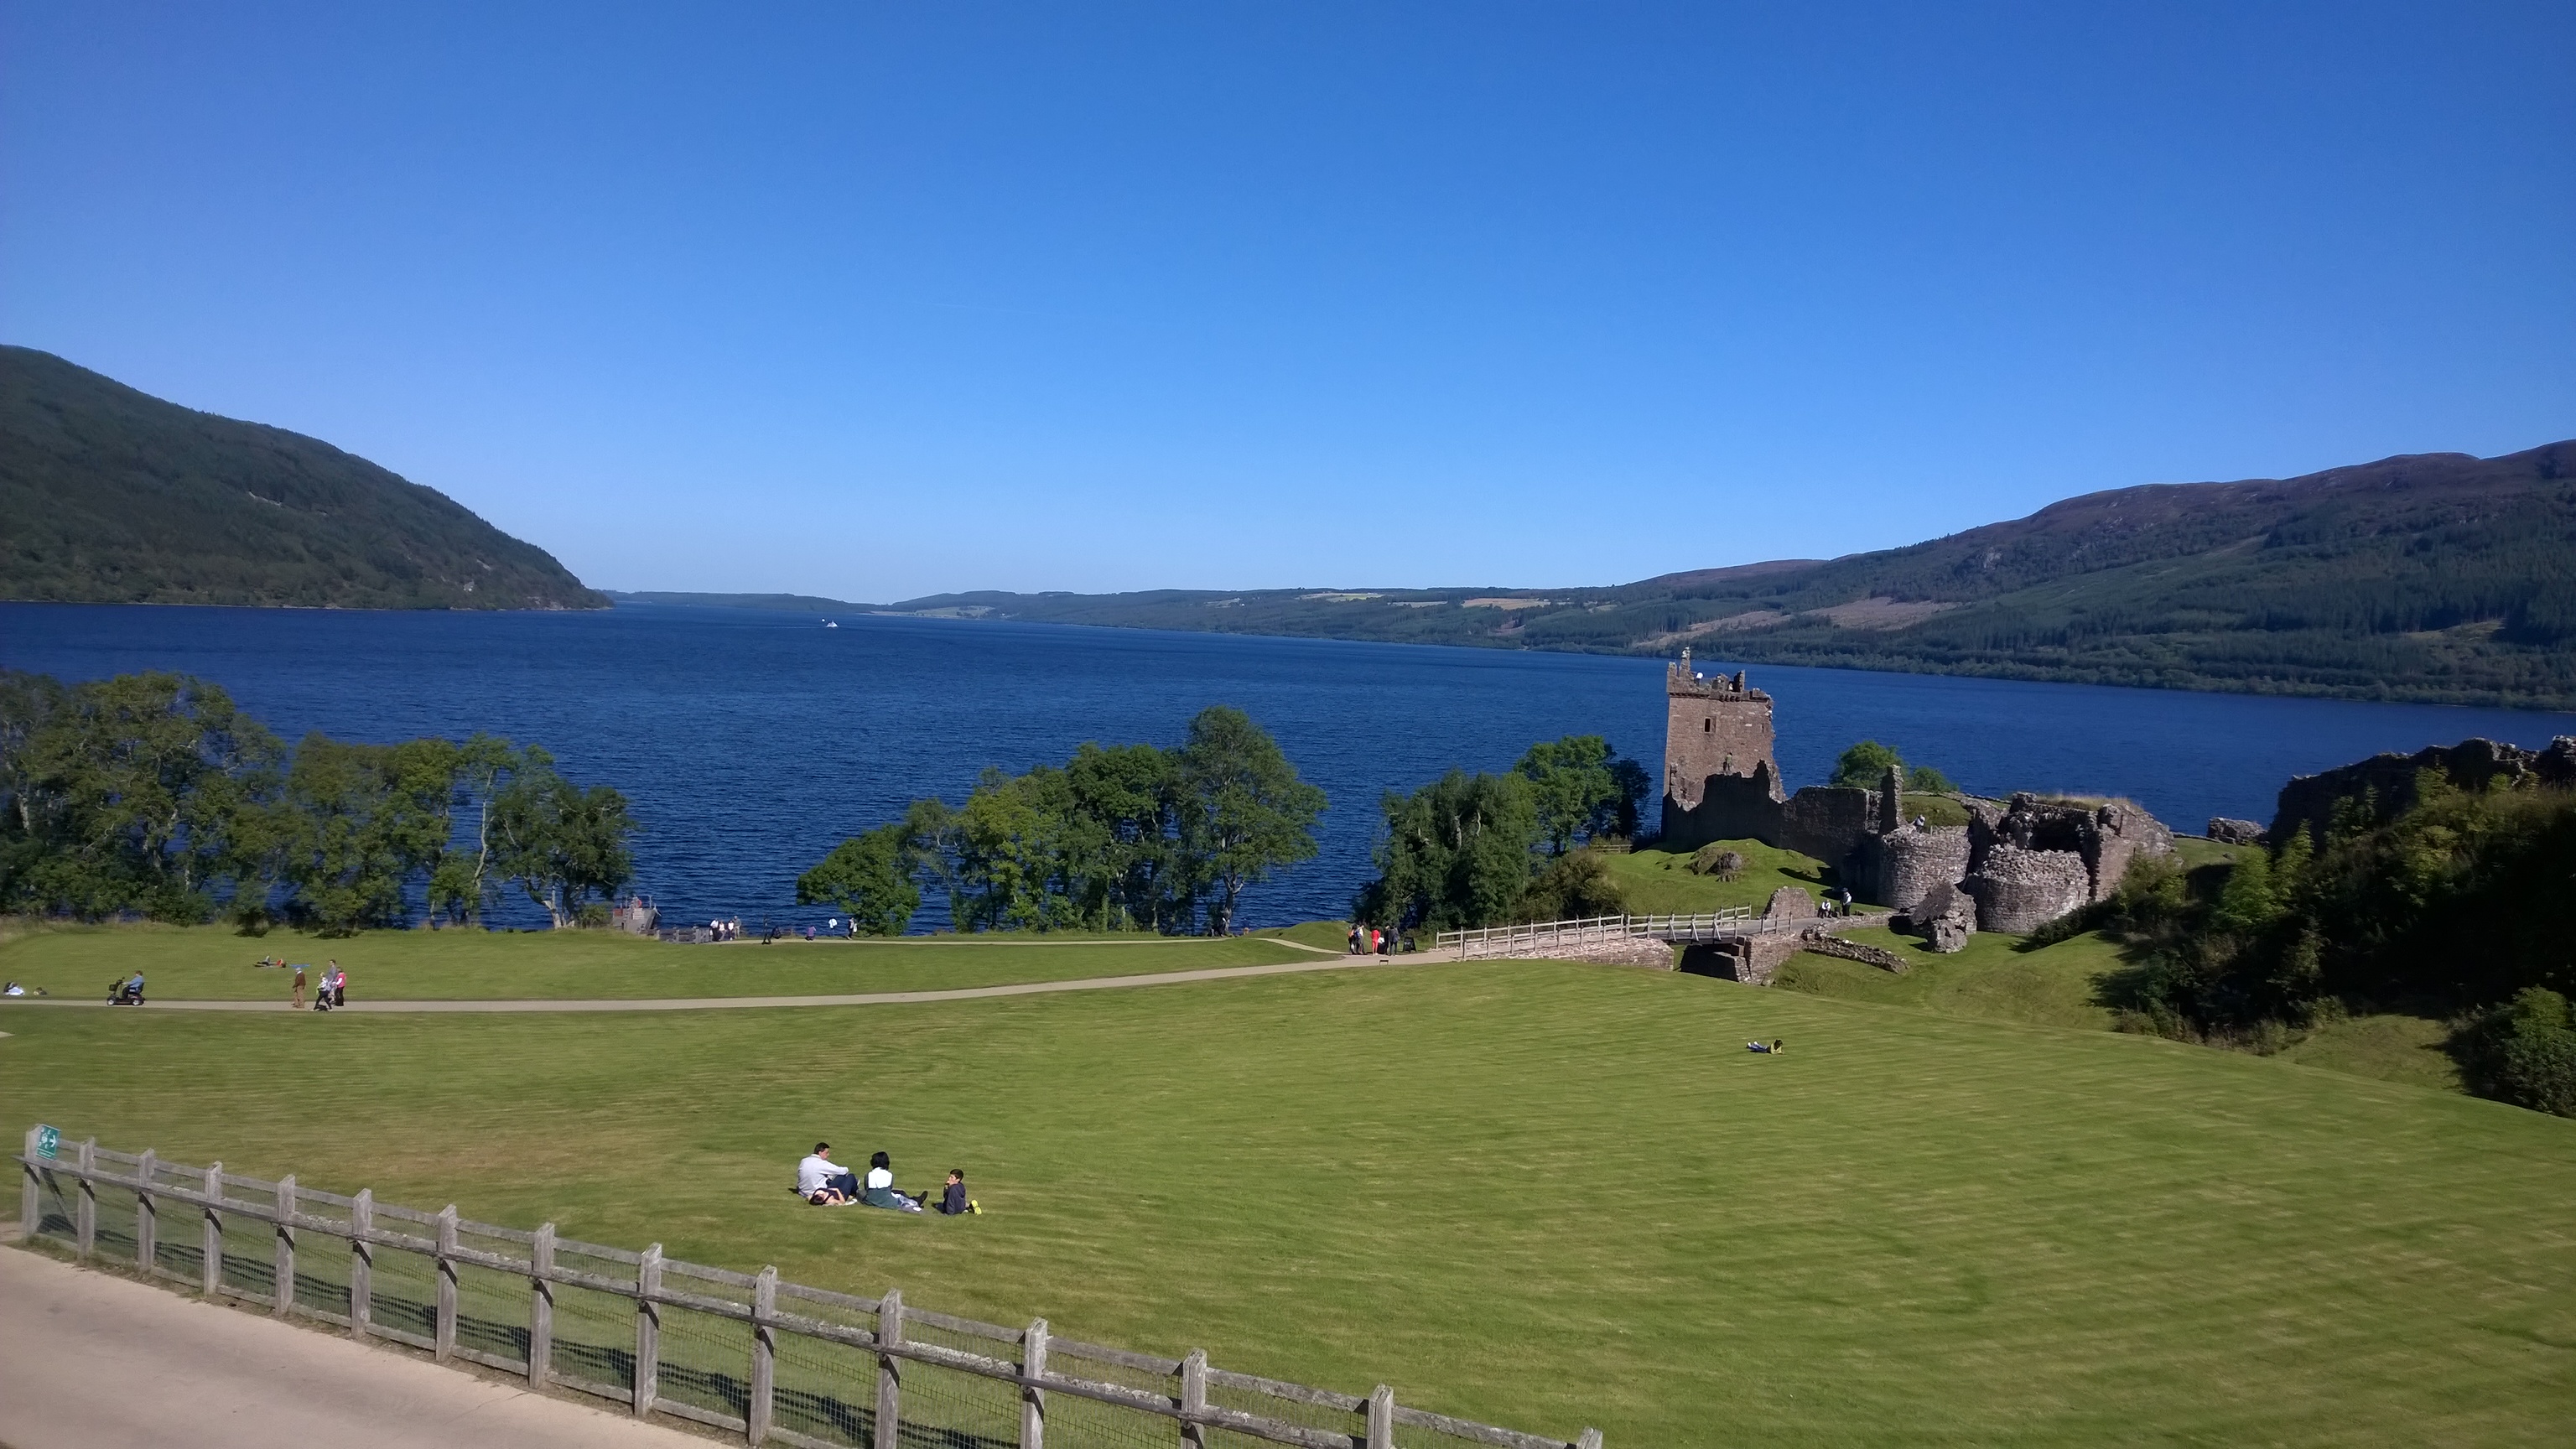 Urquhart Castle, Loch Ness